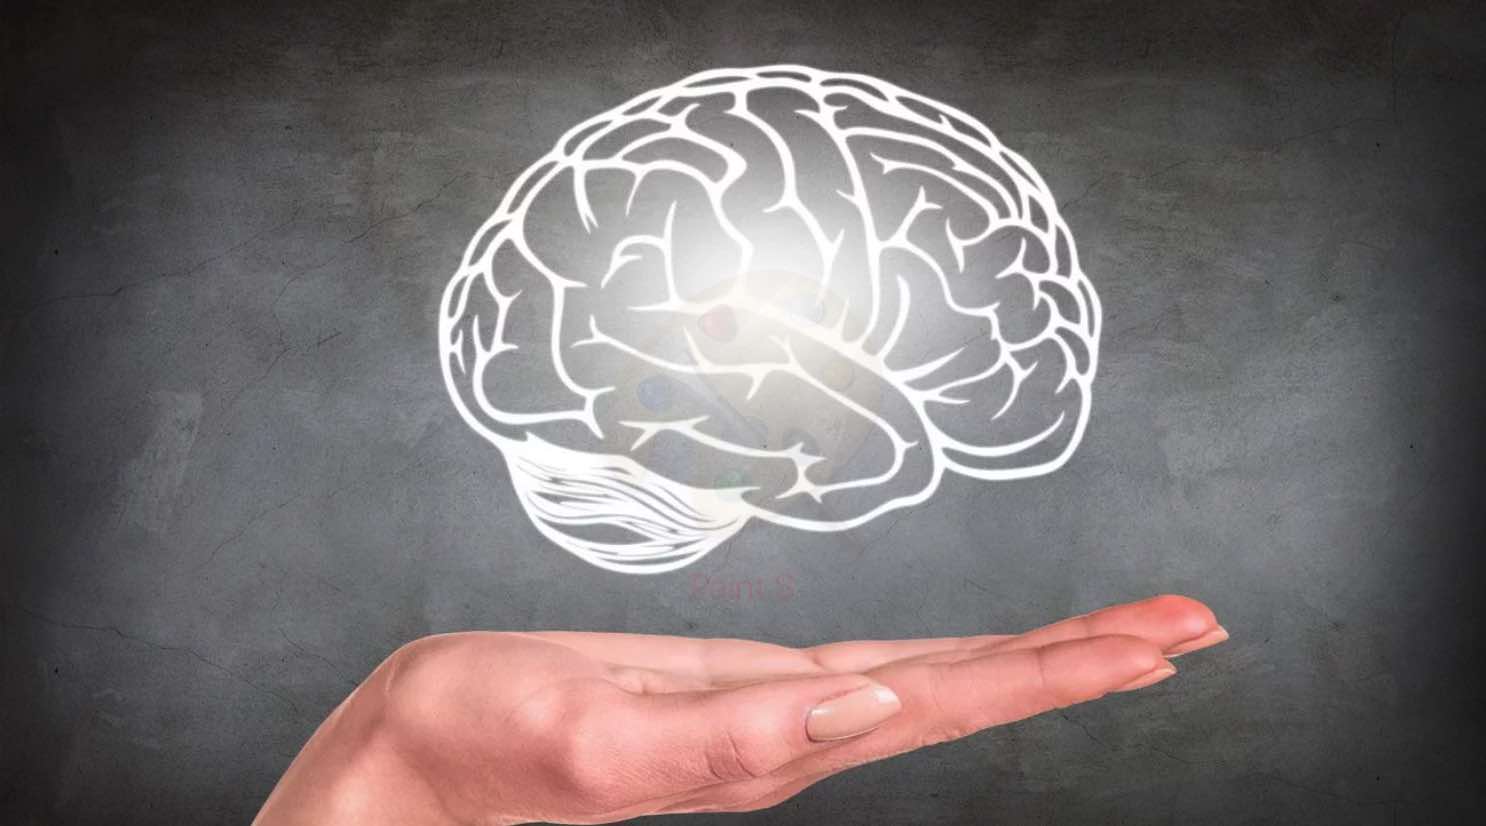 Церебральная мистика: мозг — это душа, компьютер или нечто большее?